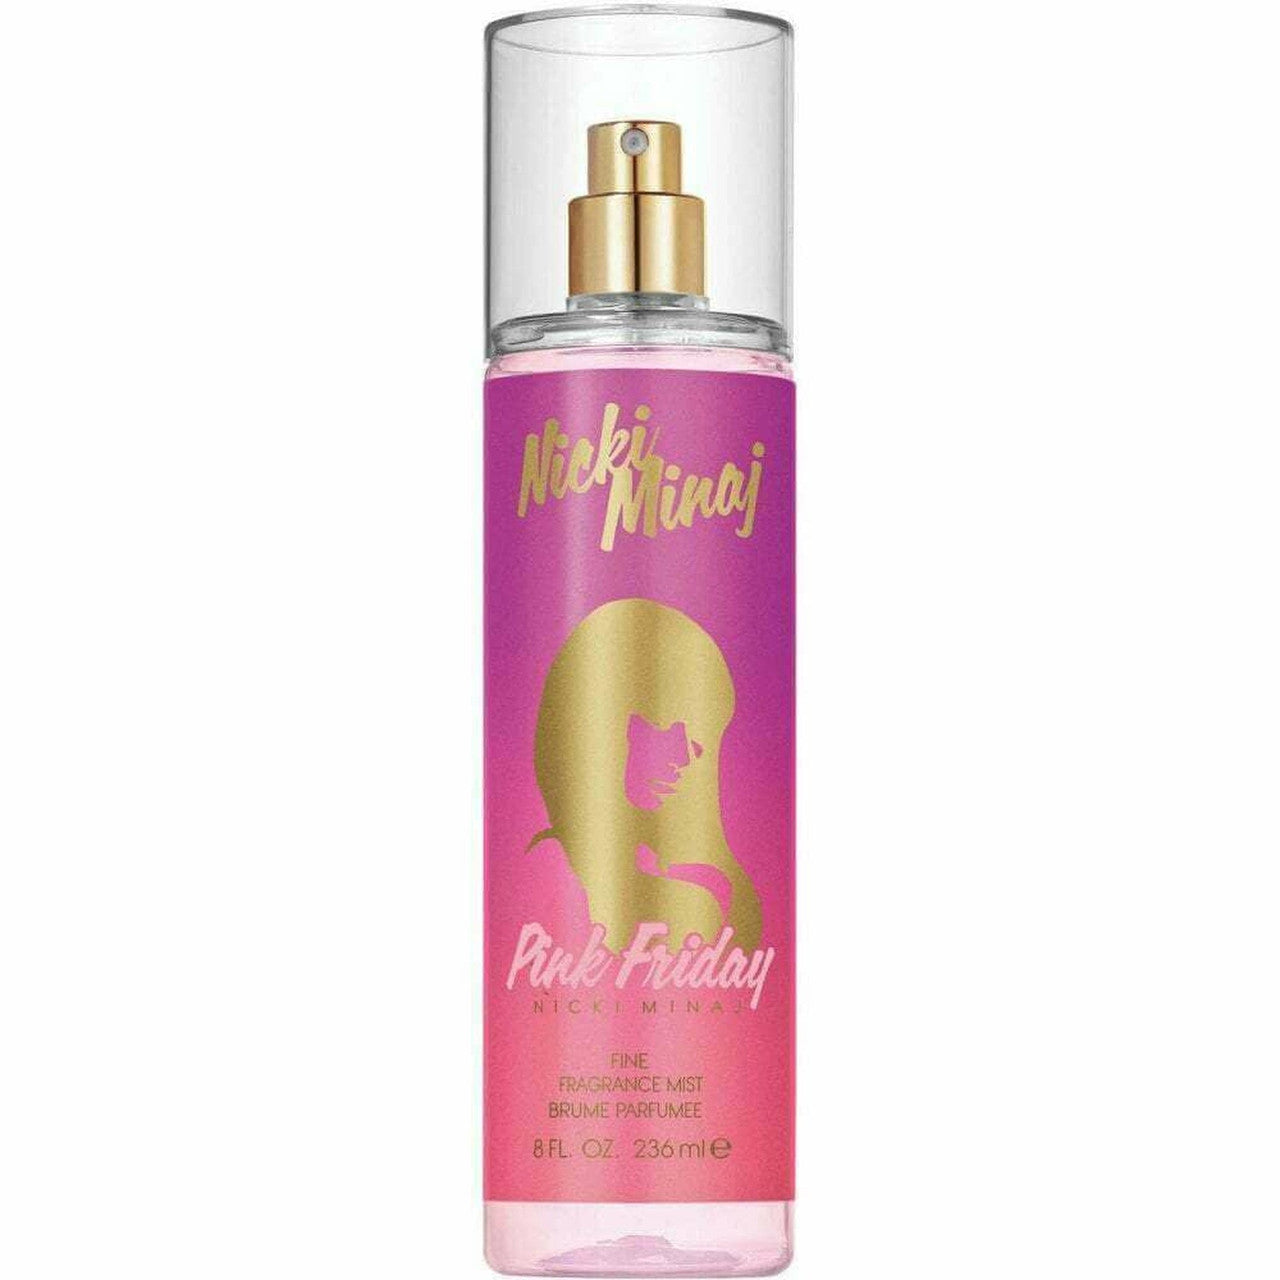 Nicki Minaj Pink Friday Body Mist 235ml Spray